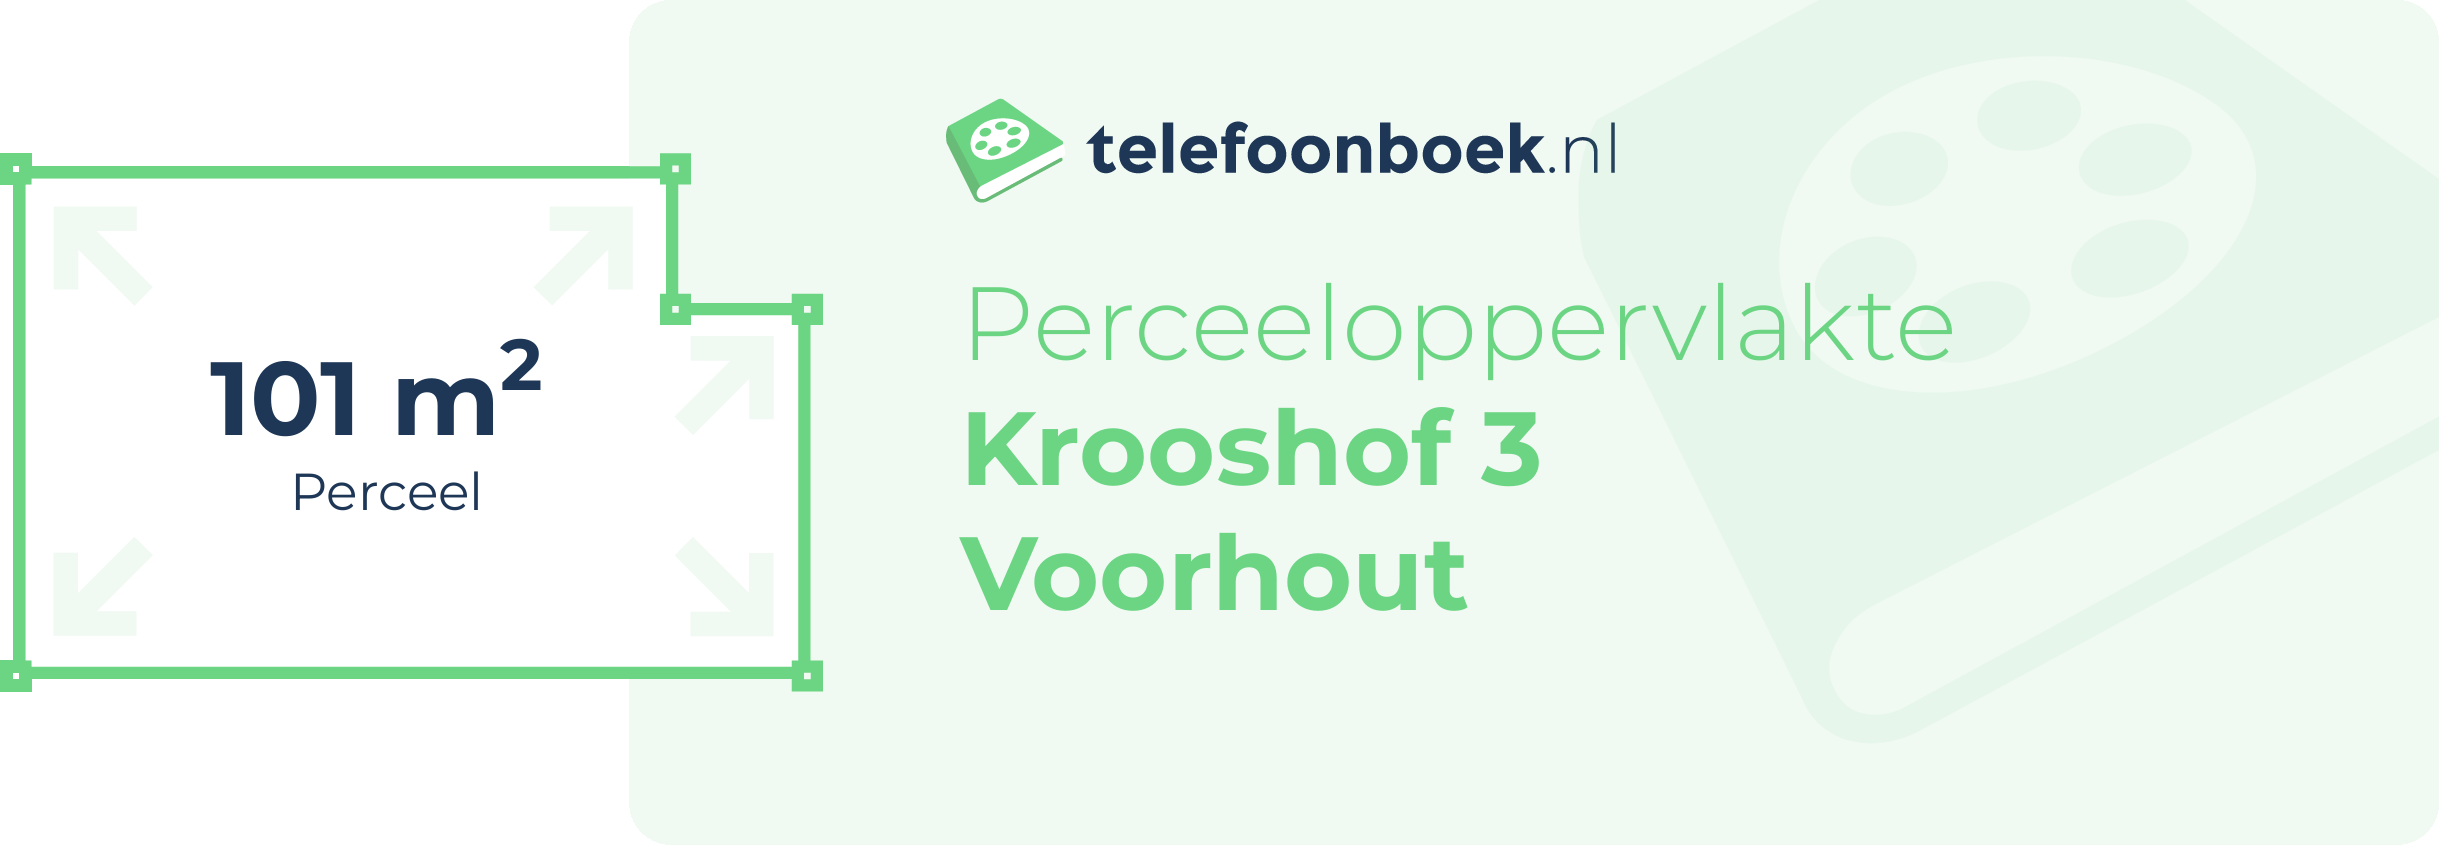 Perceeloppervlakte Krooshof 3 Voorhout